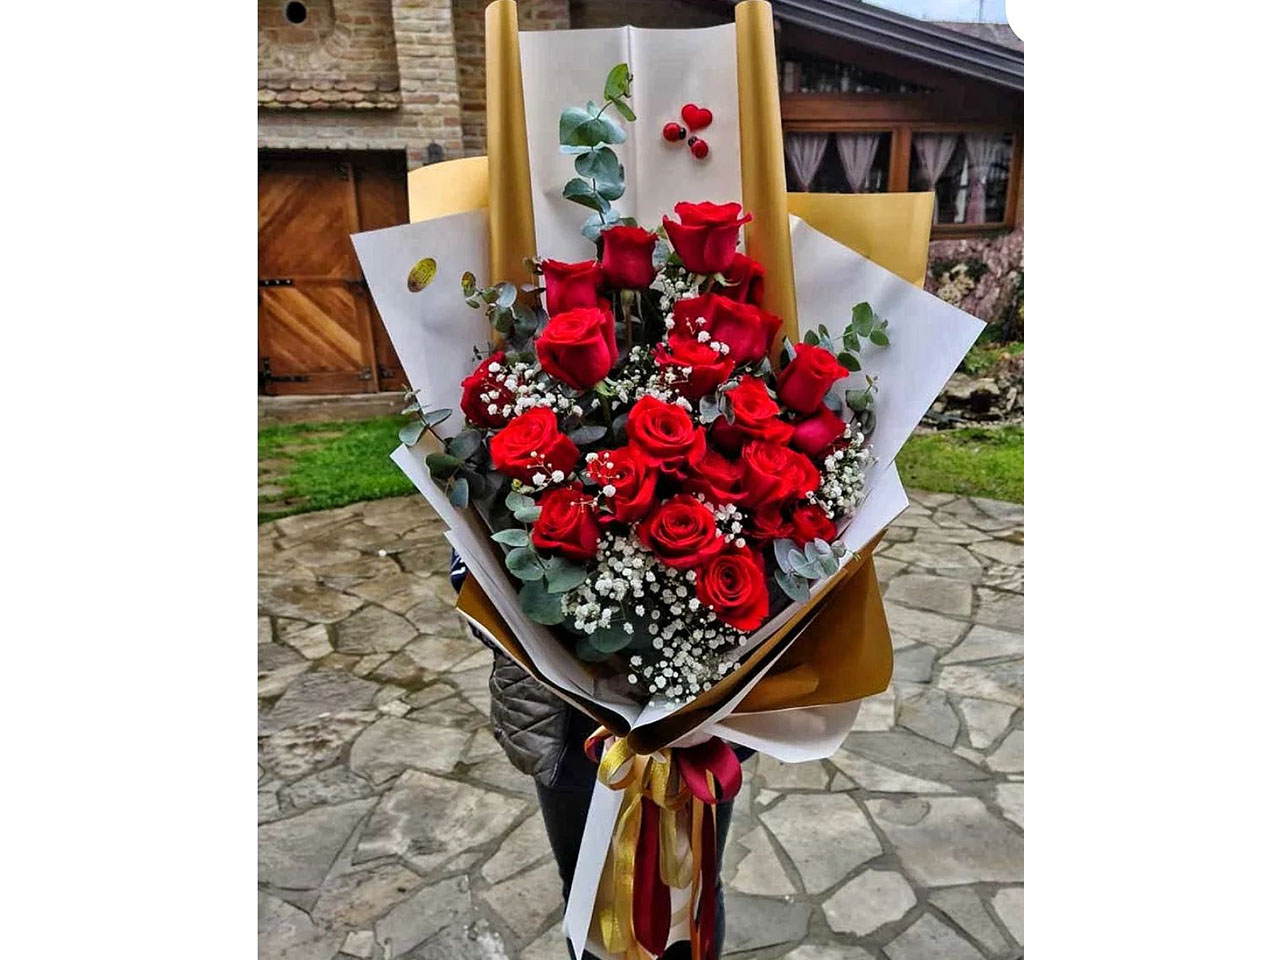 CVJEĆARA LOVE ORHIDEJA Cvjeće, cvjećare Banja Luka - Slika 6